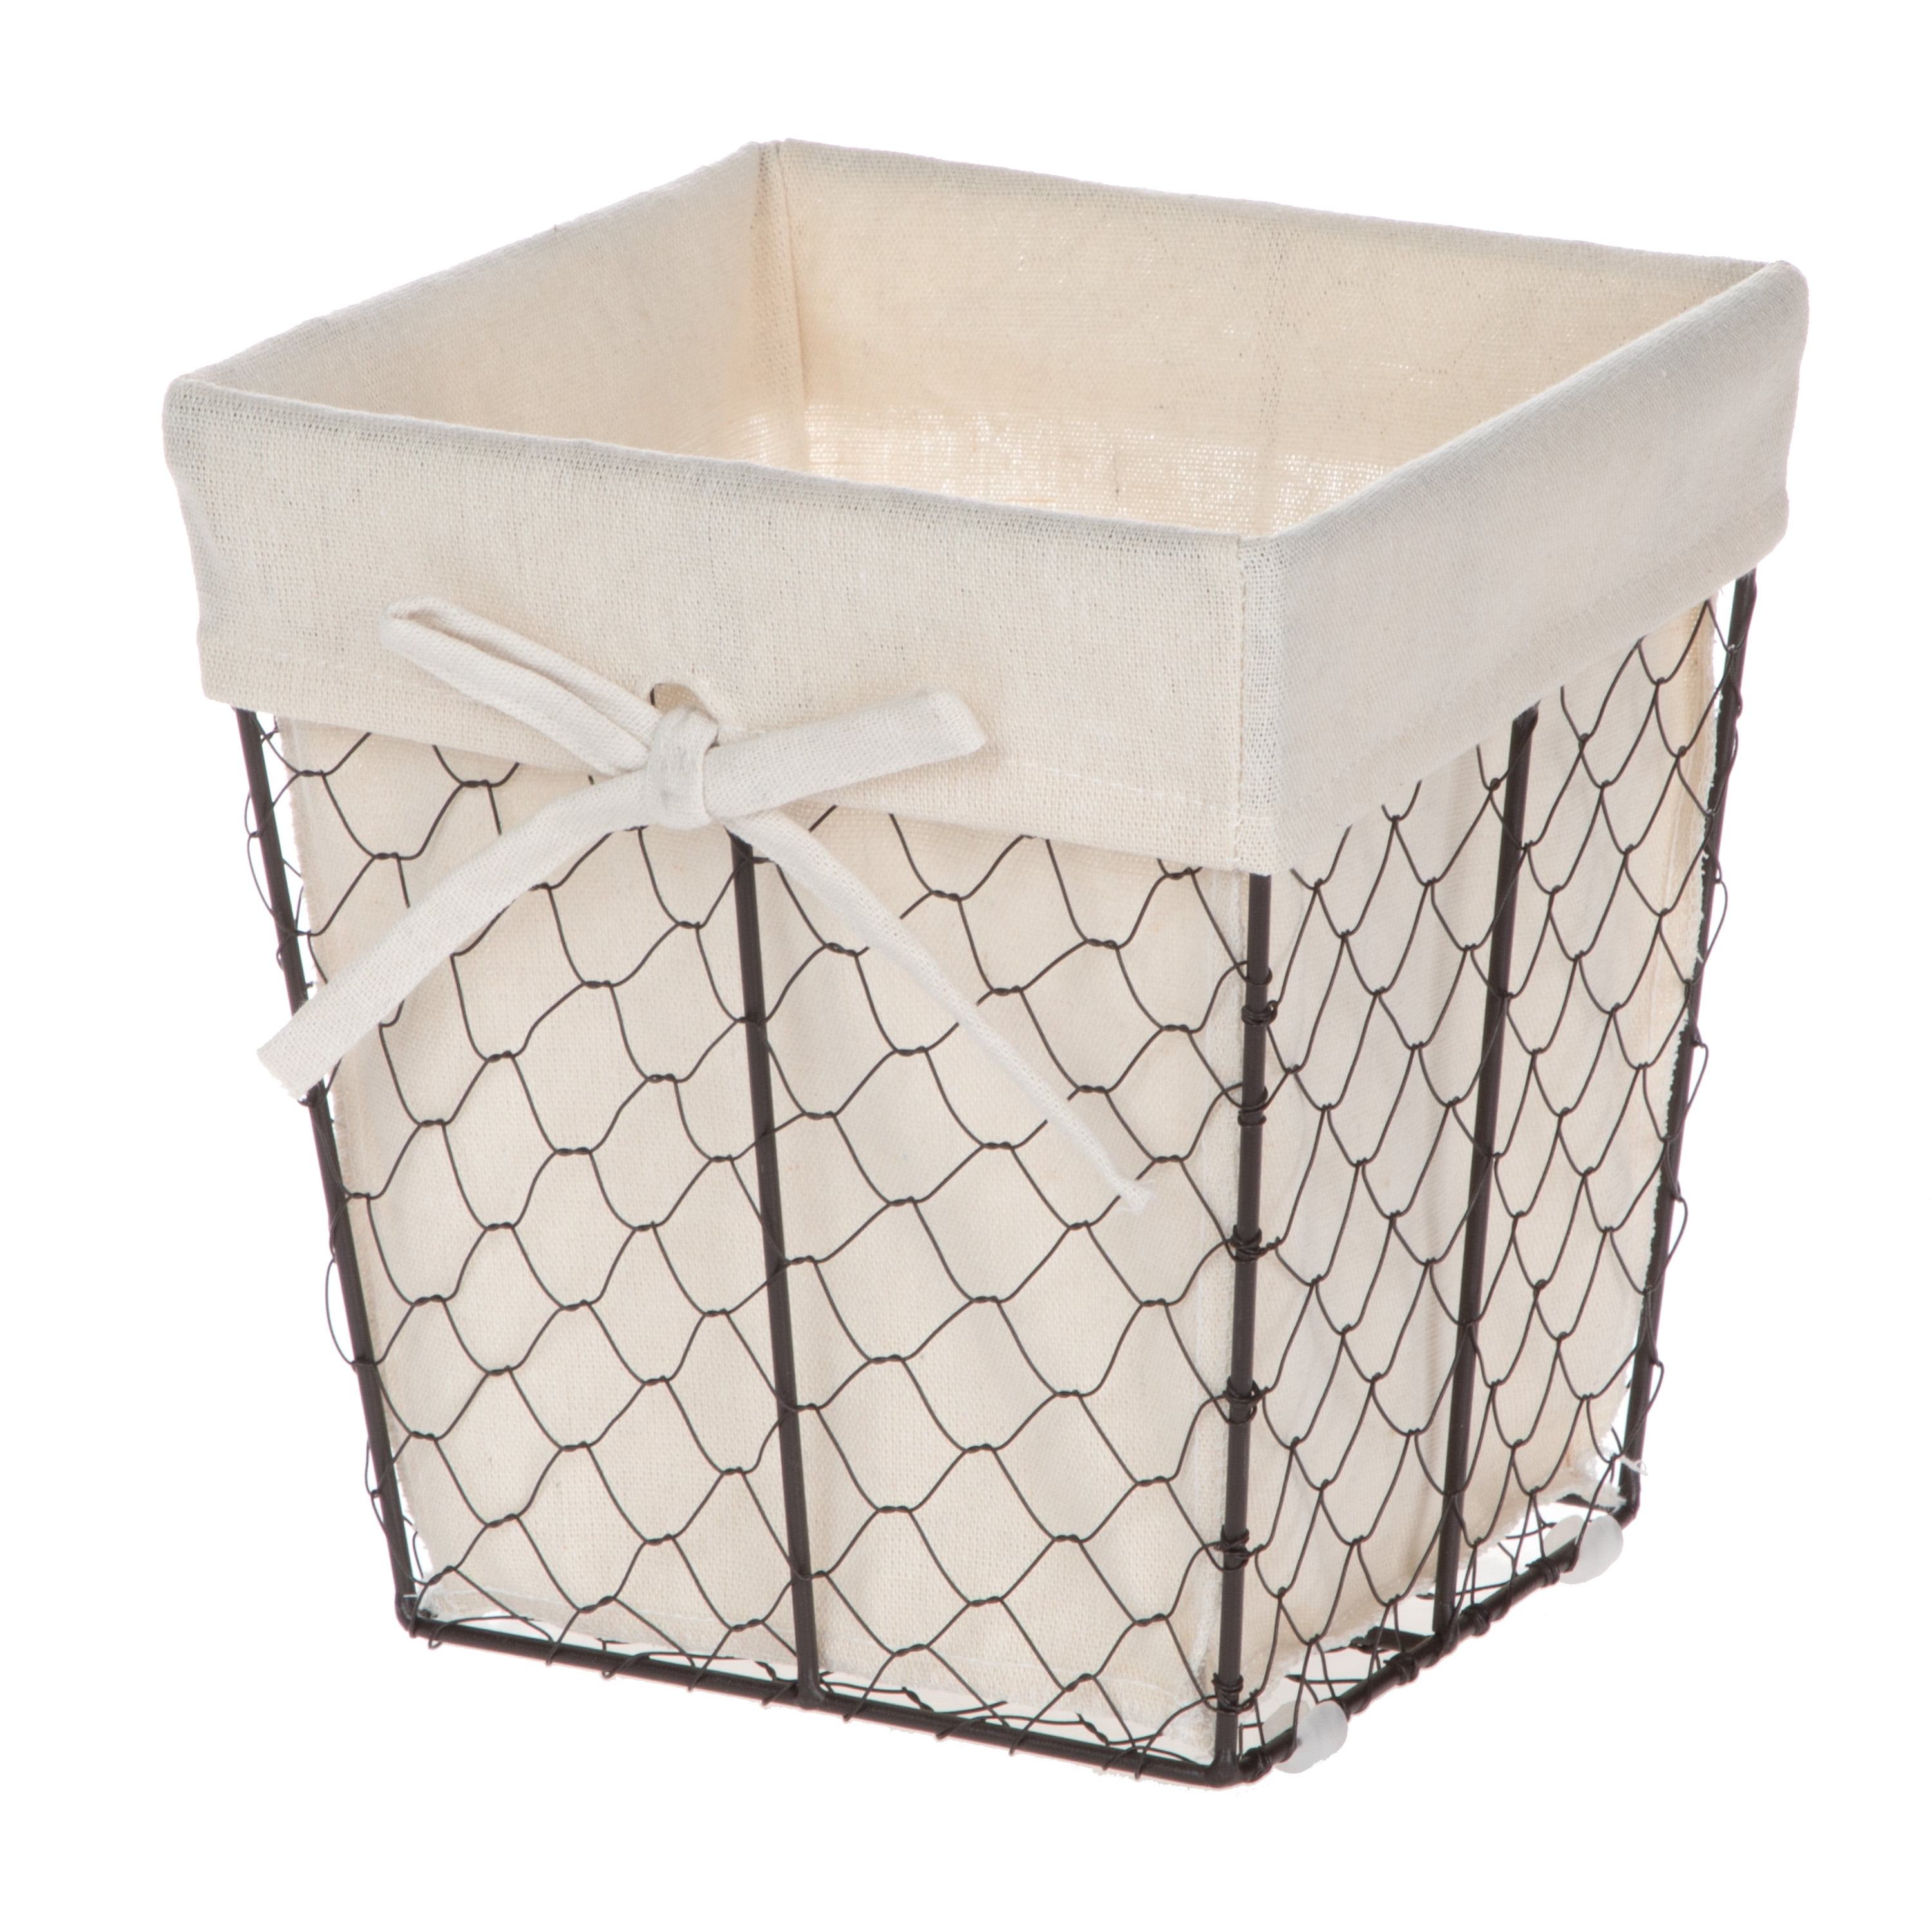 Decorative Chicken Wire Nesting Storage Baskets Set Of 2 